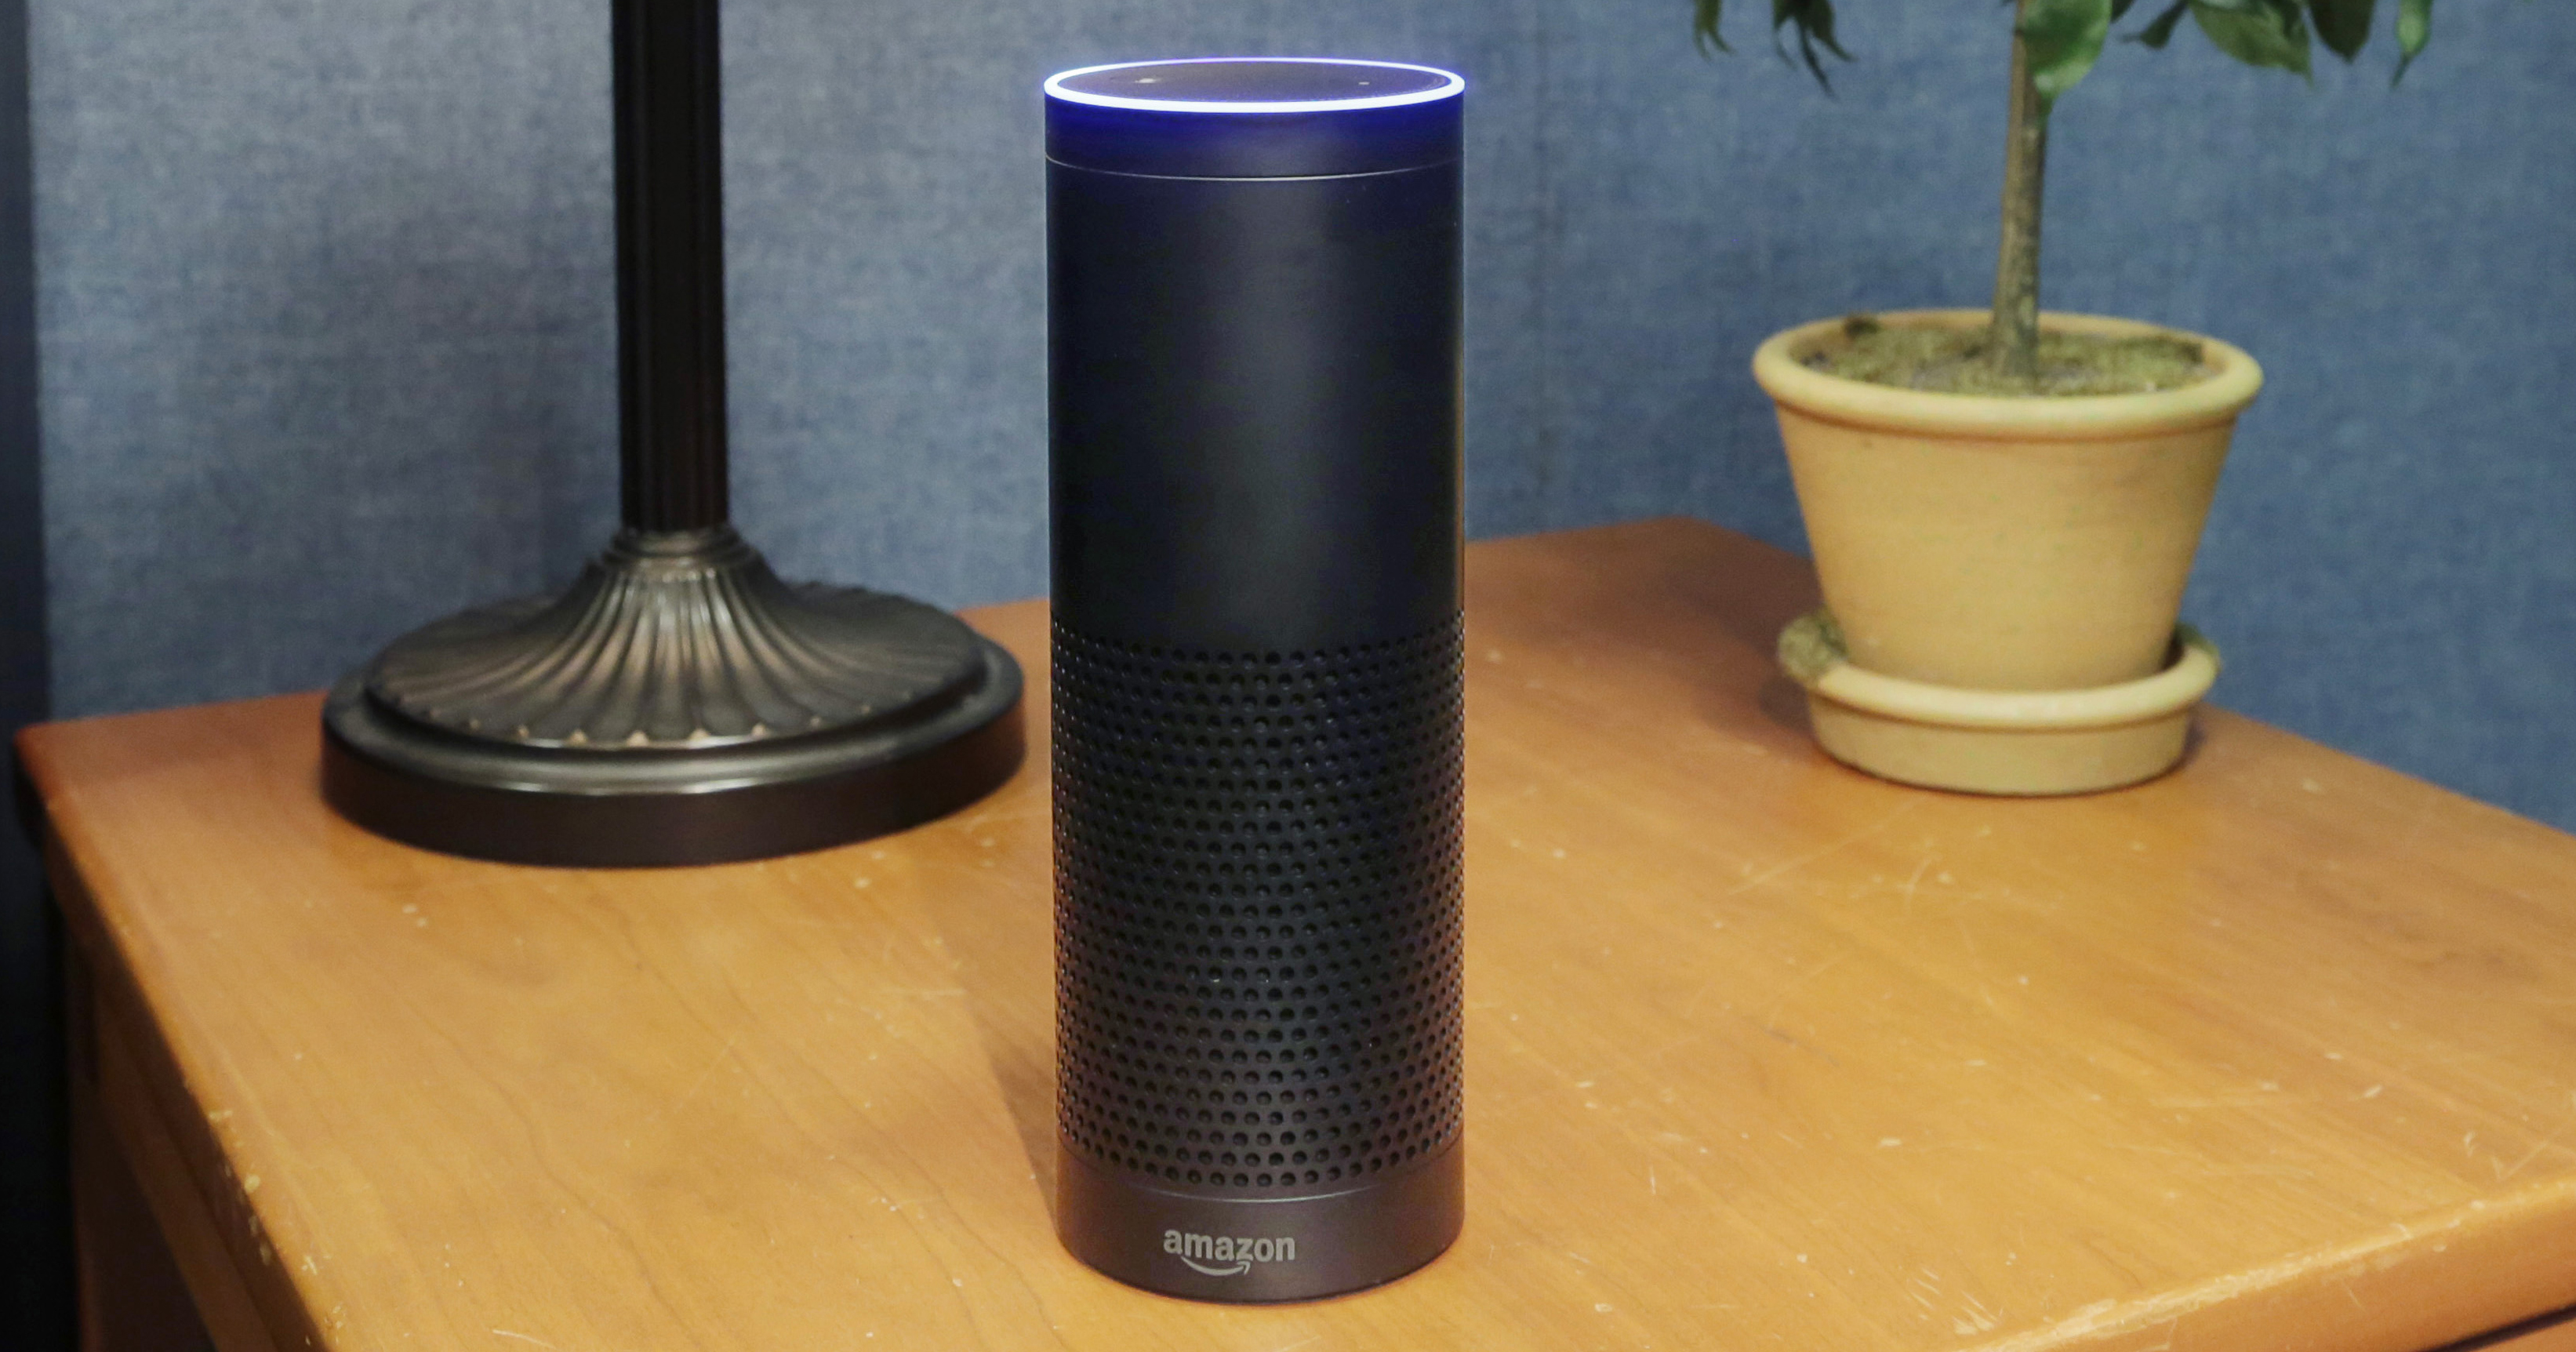 Amazon's Echo is seen on July 29, 2015 in New York City. (Mark Lennihan—AP)